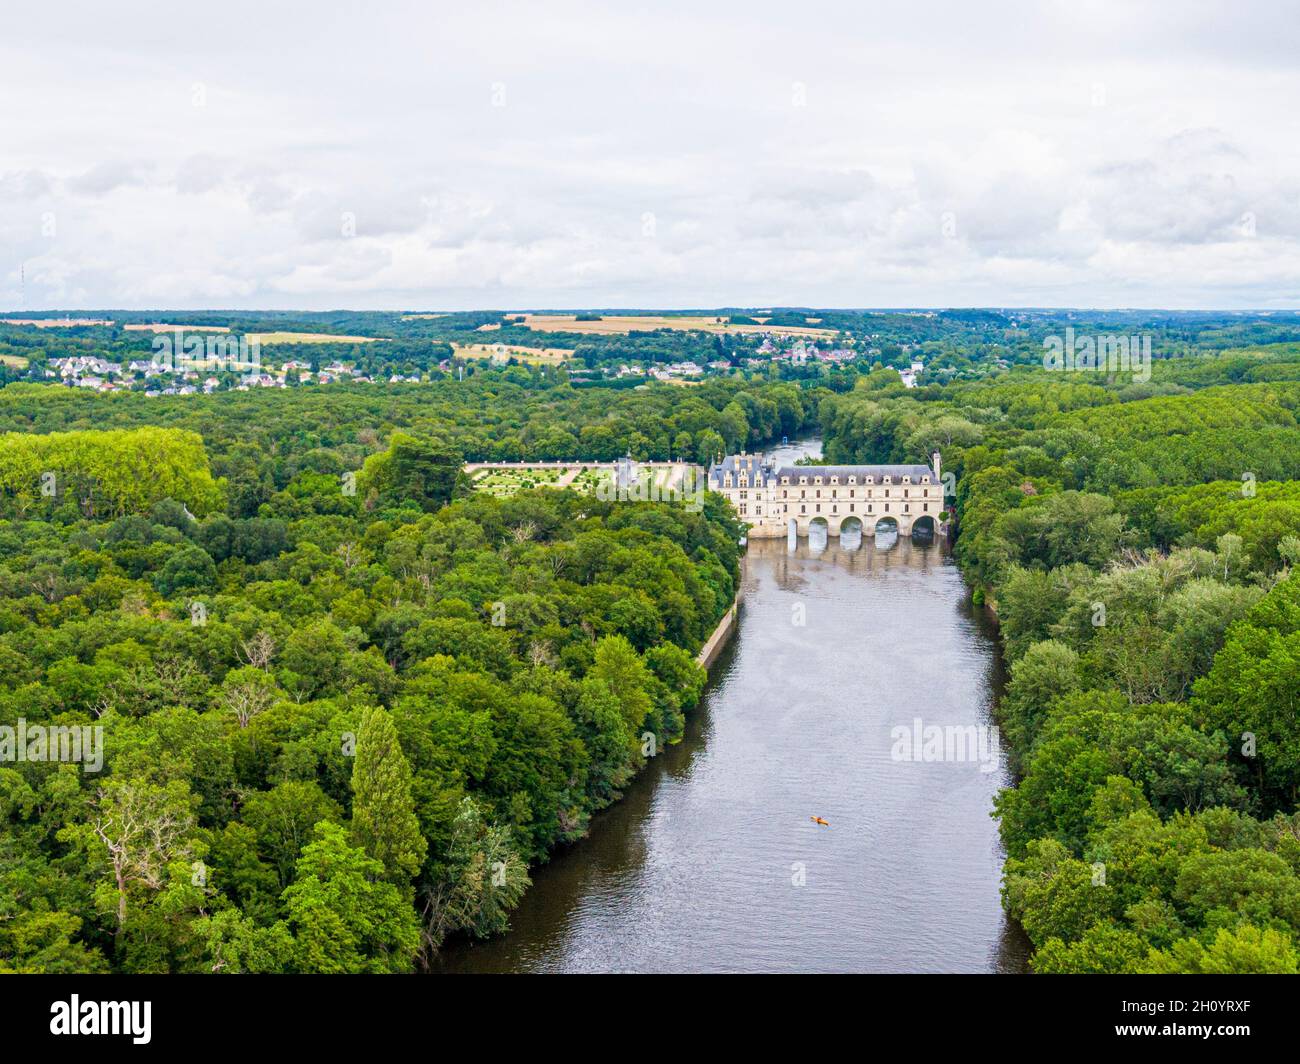 Vue aérienne sur le château de Chenonceau, vallée de la Loire, France, Sologne Banque D'Images